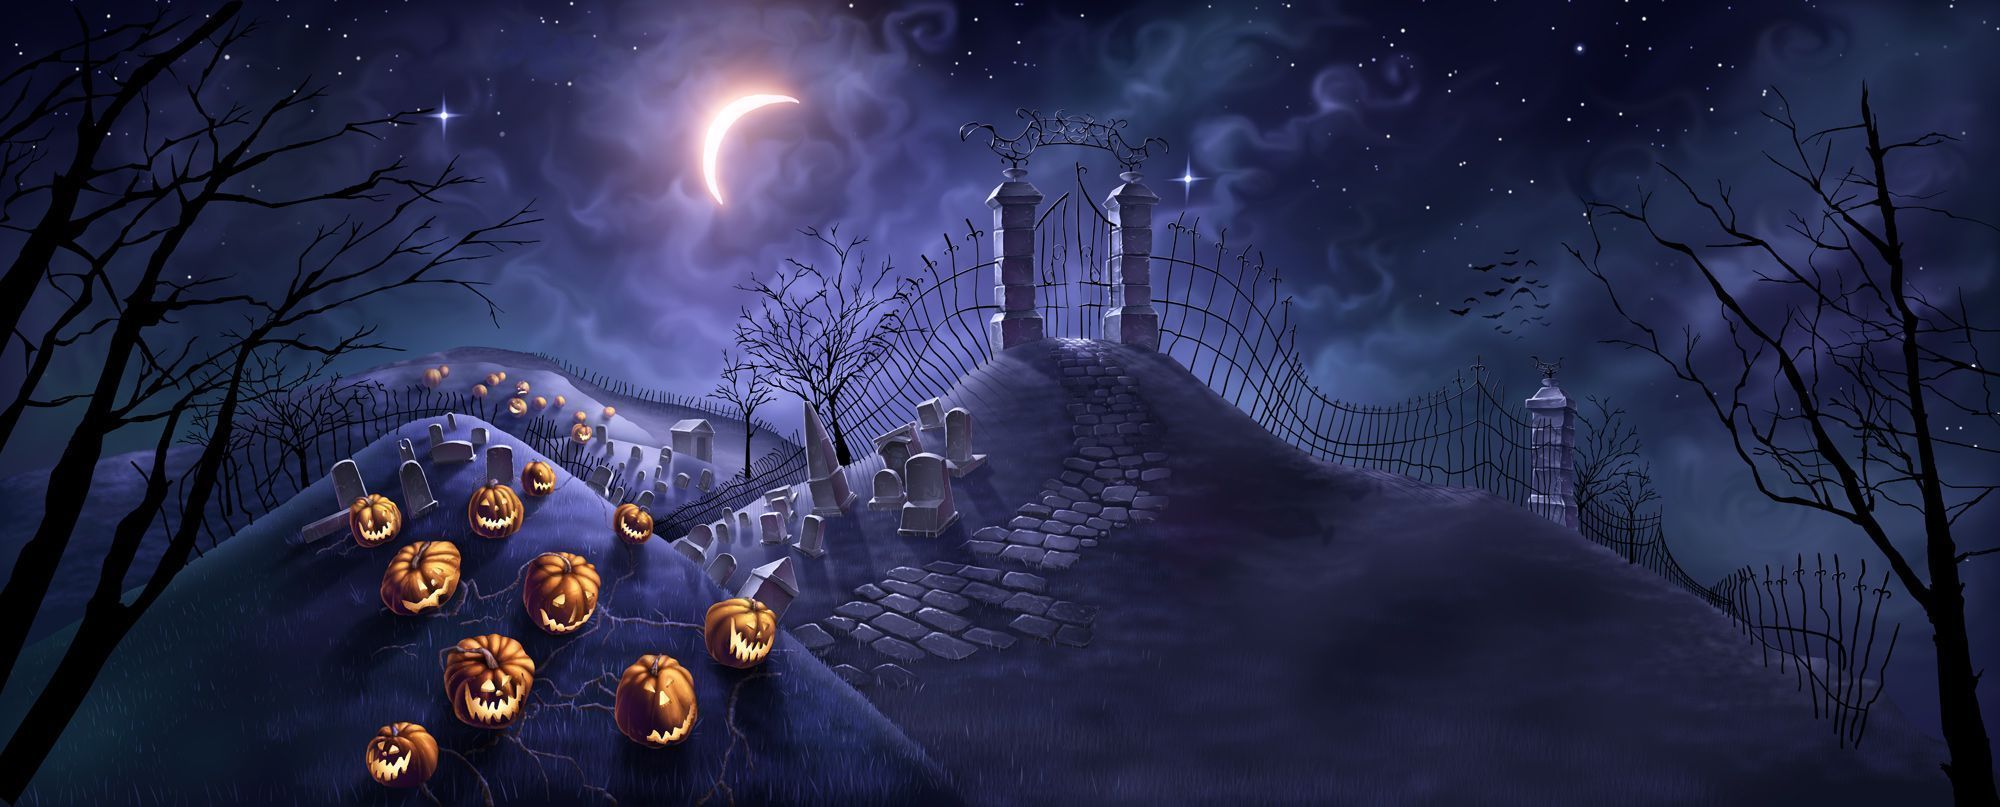 Spooky Halloween Backgrounds